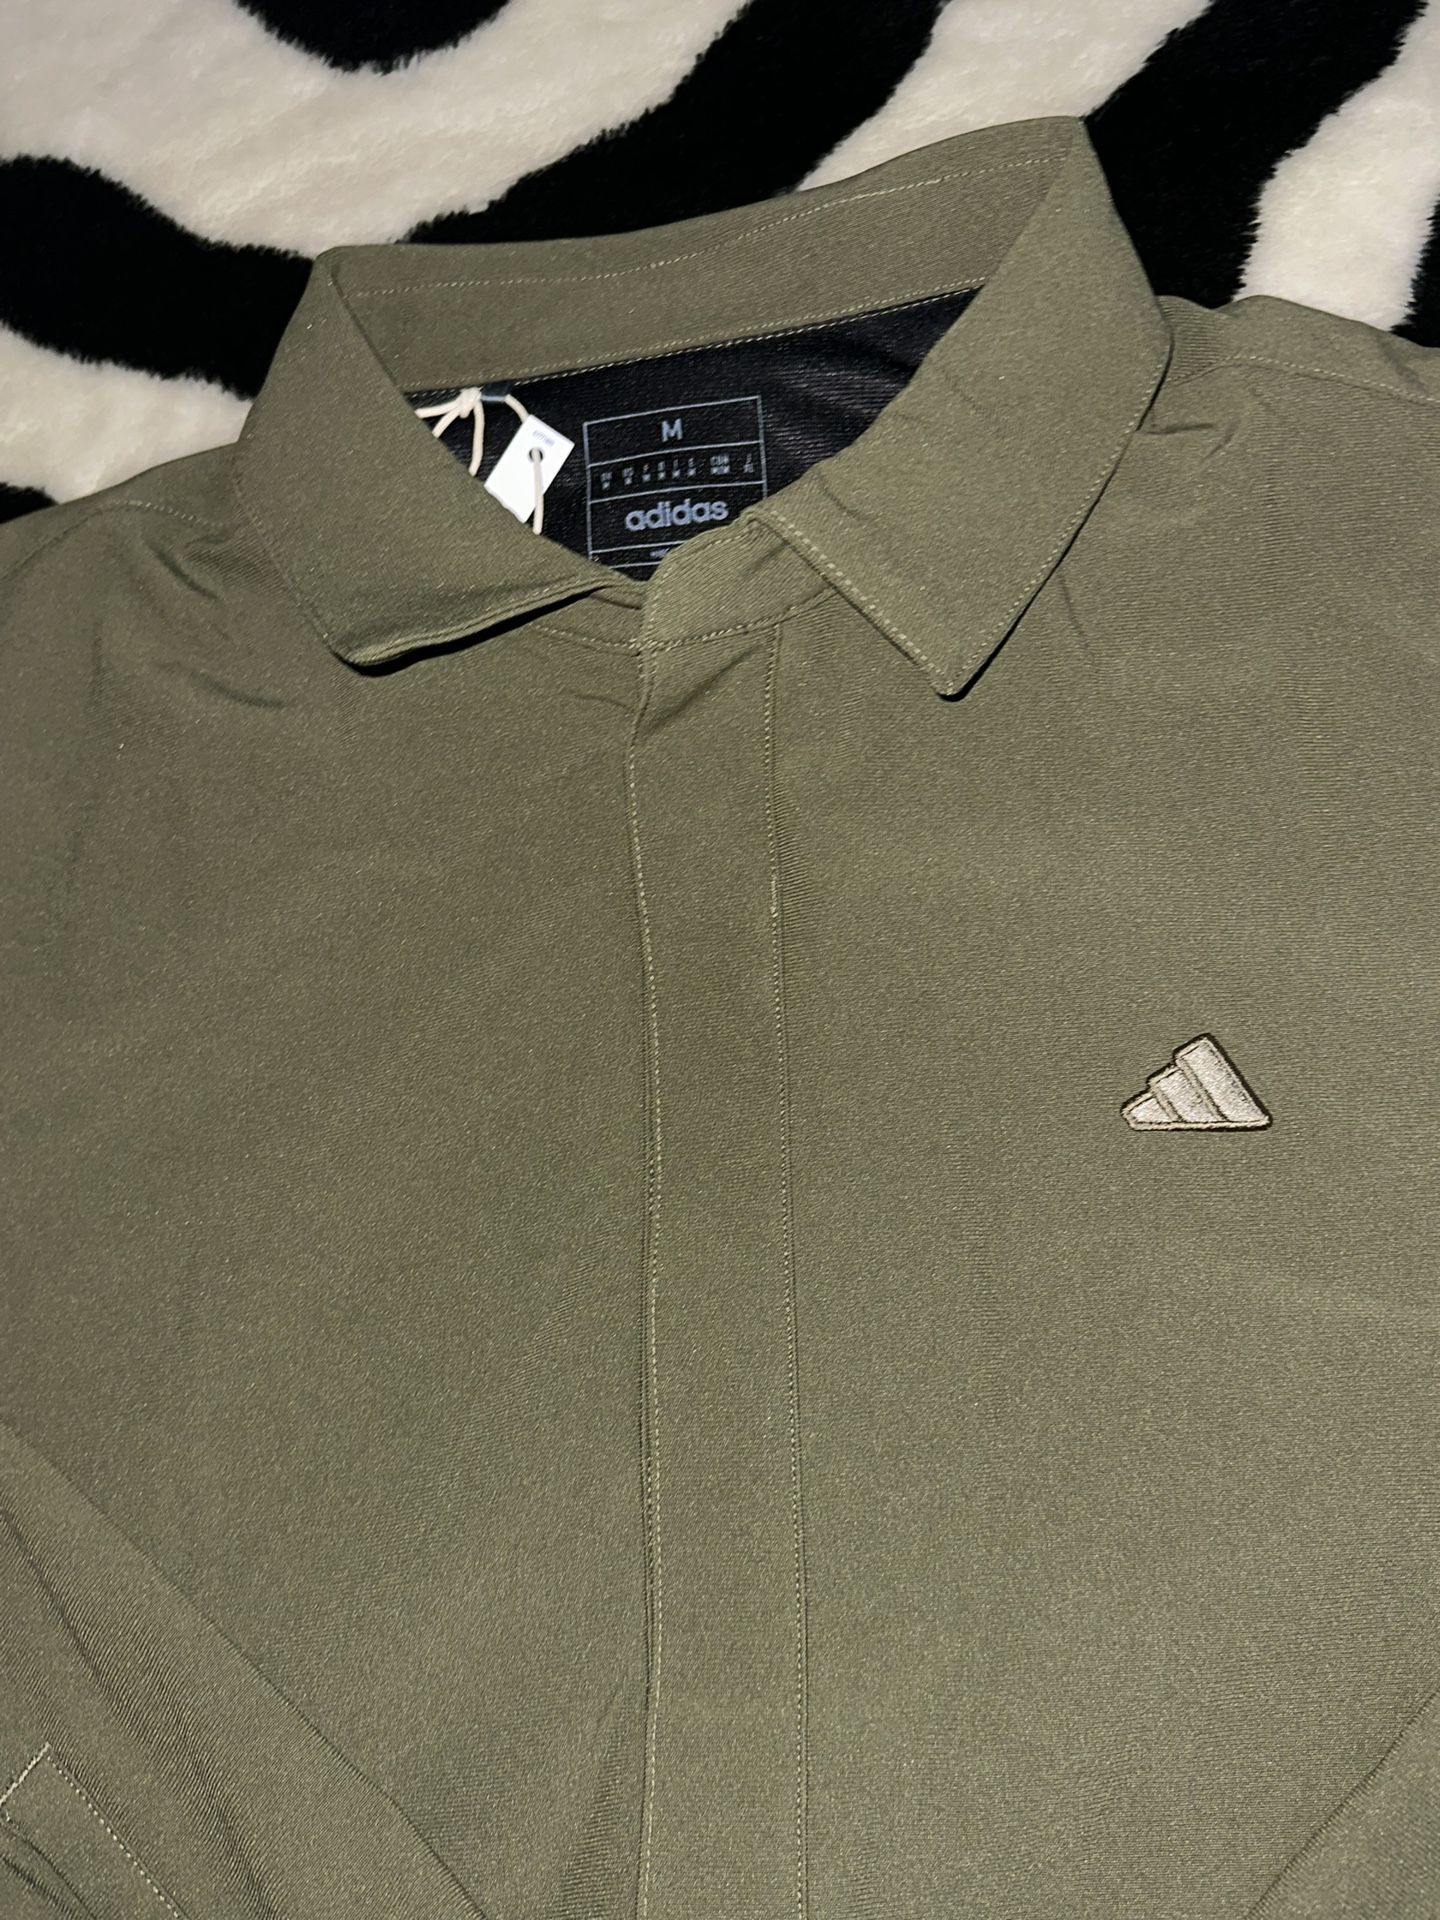 Adidas Chore Jacket Olive Green